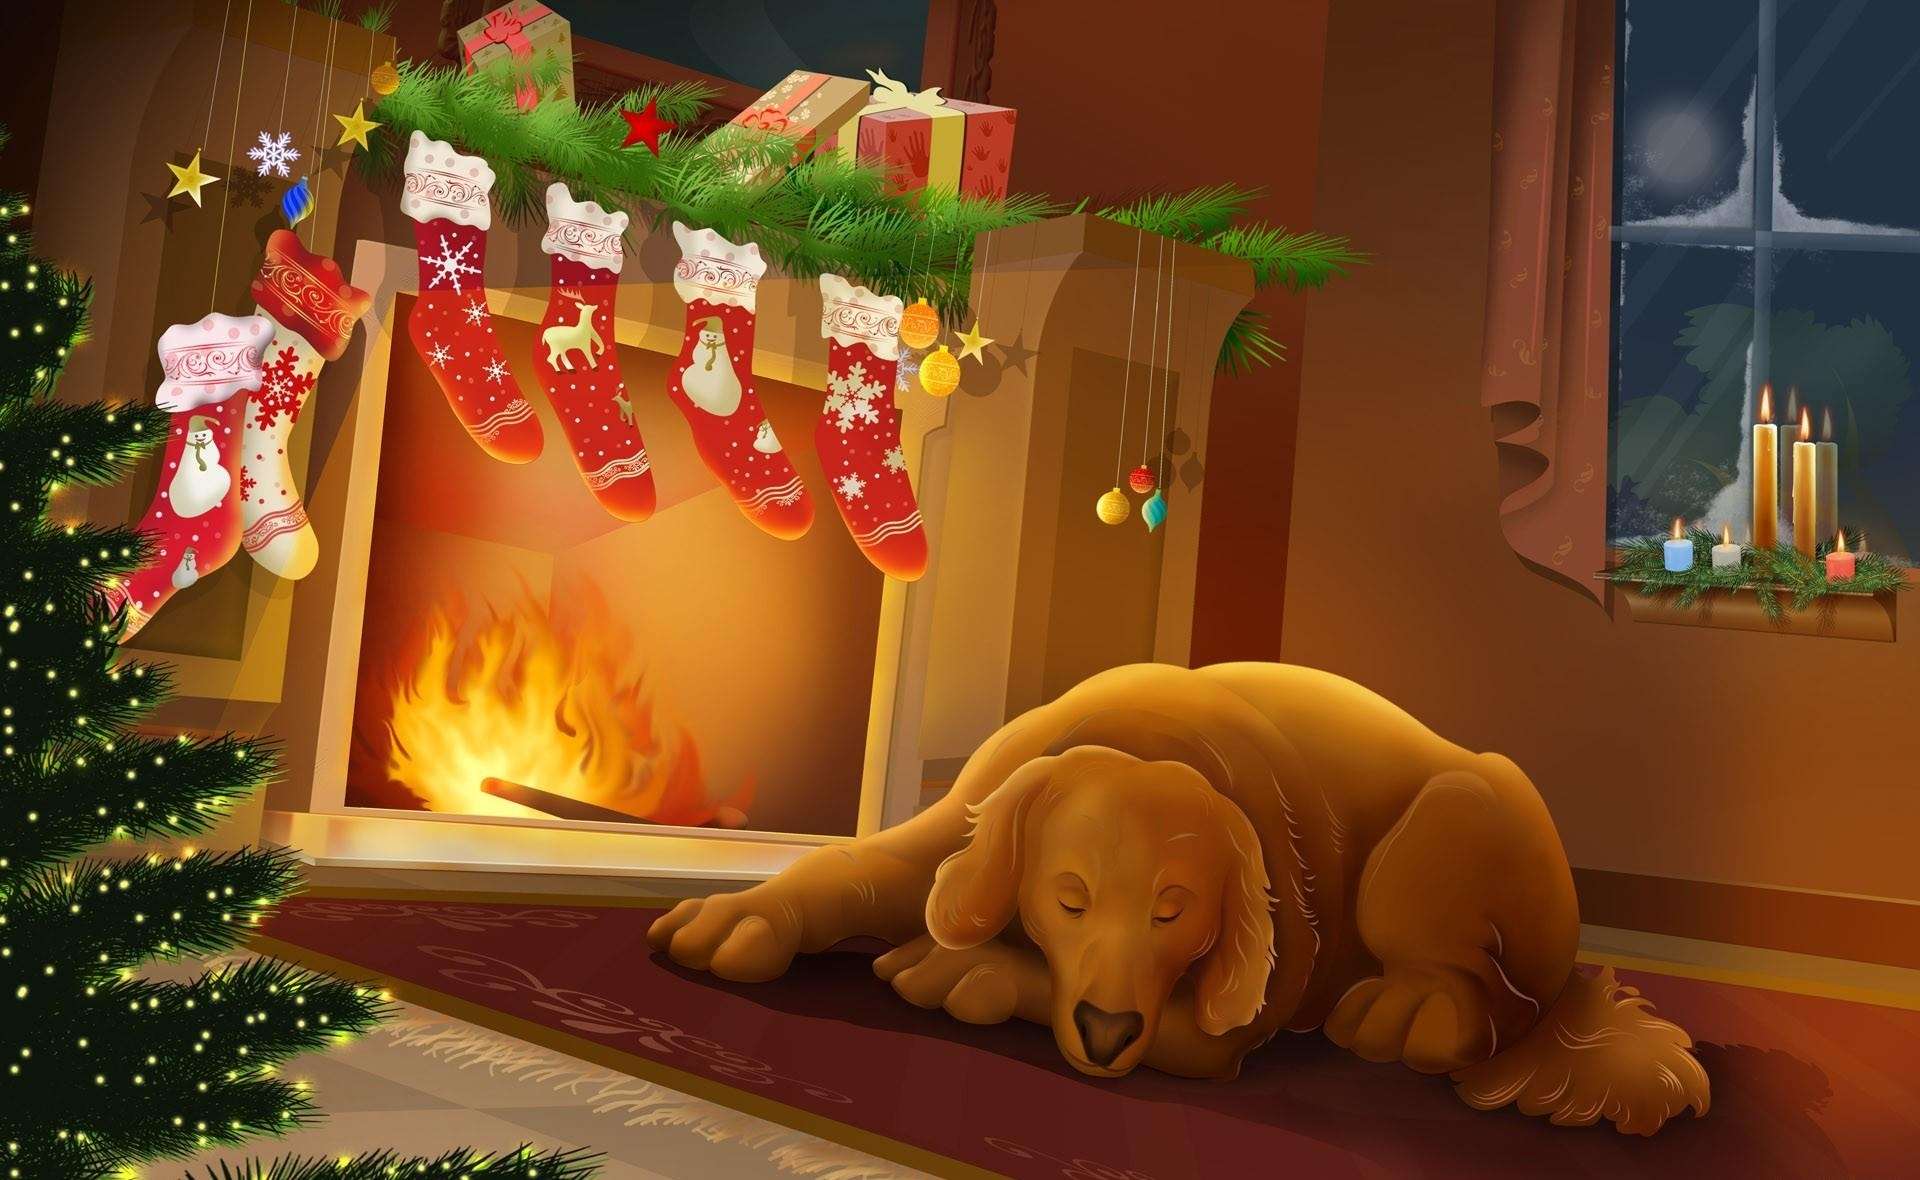 Собака, спящая у камина с новогодними носками для подарков, фото фотография картинка обои